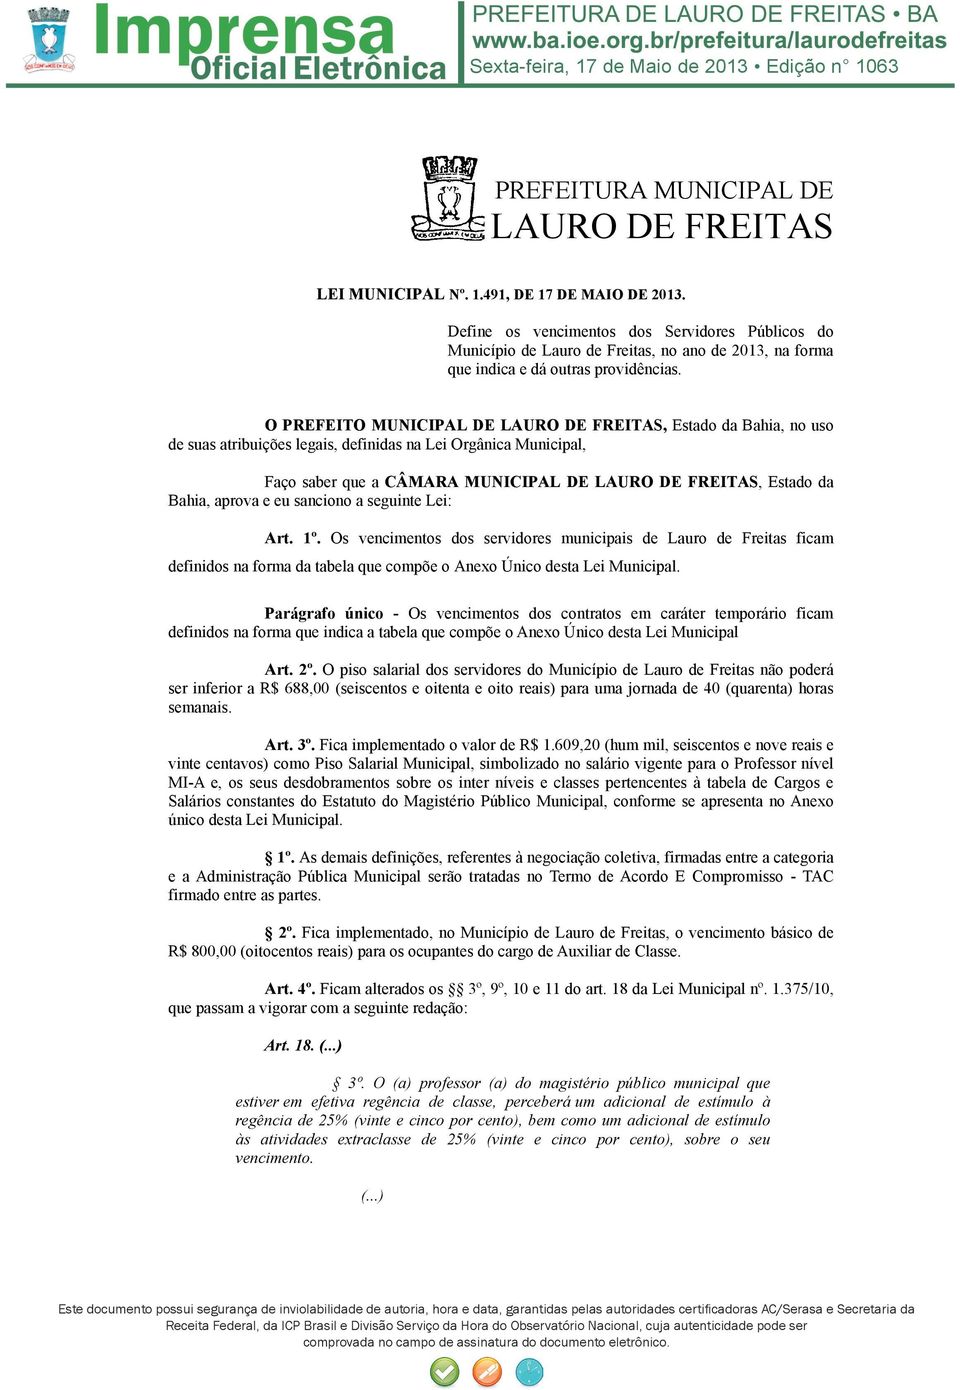 seguinte Lei: Art. 1º. Os vencimentos dos servidores municipais de Lauro de Freitas ficam definidos na forma da tabela que compõe o Anexo Único desta Lei Municipal.